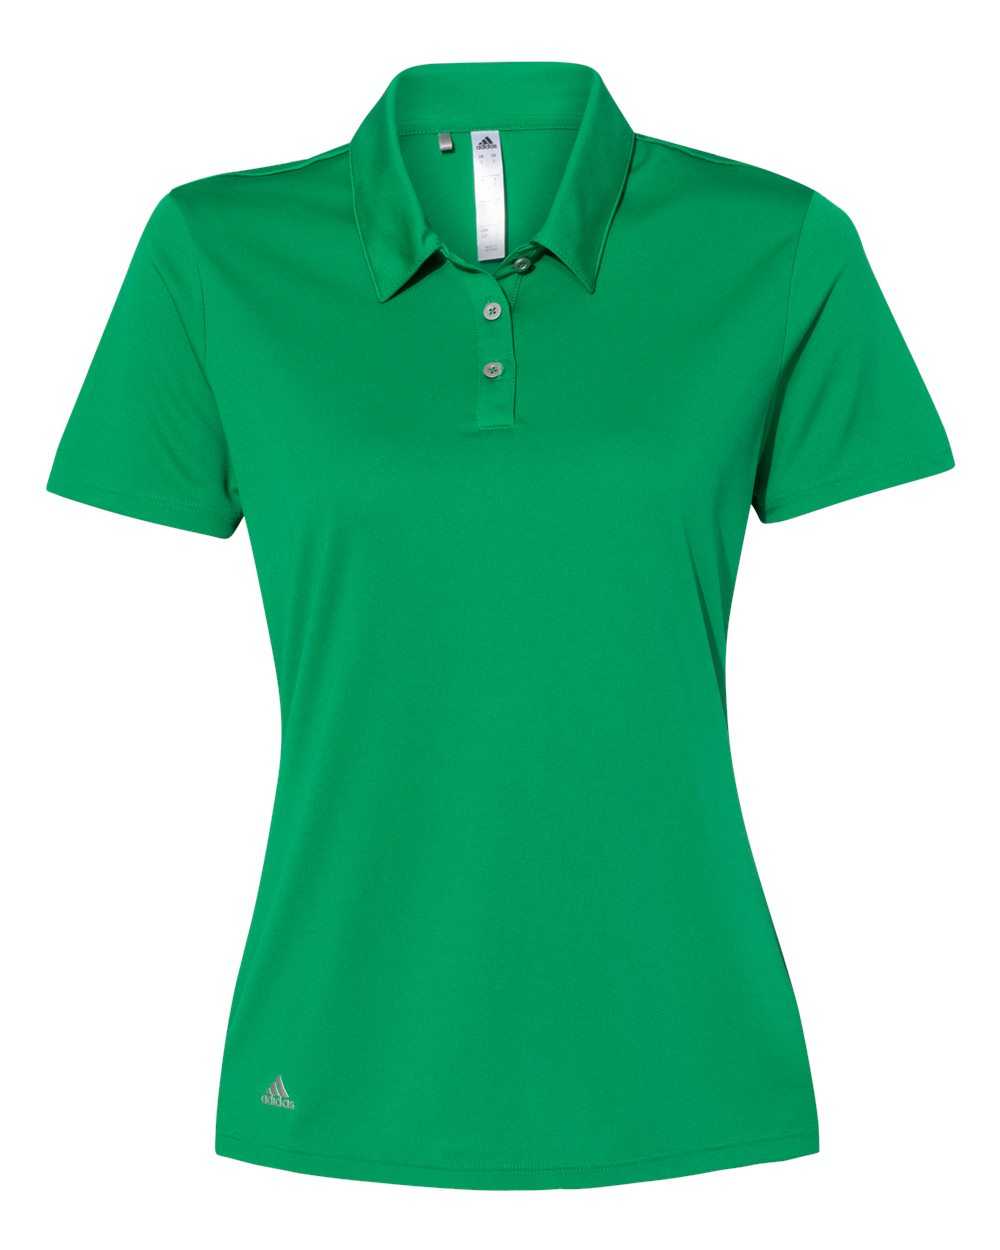 Adidas A231 Women&#39;s Performance Sport Shirt - Green - HIT a Double